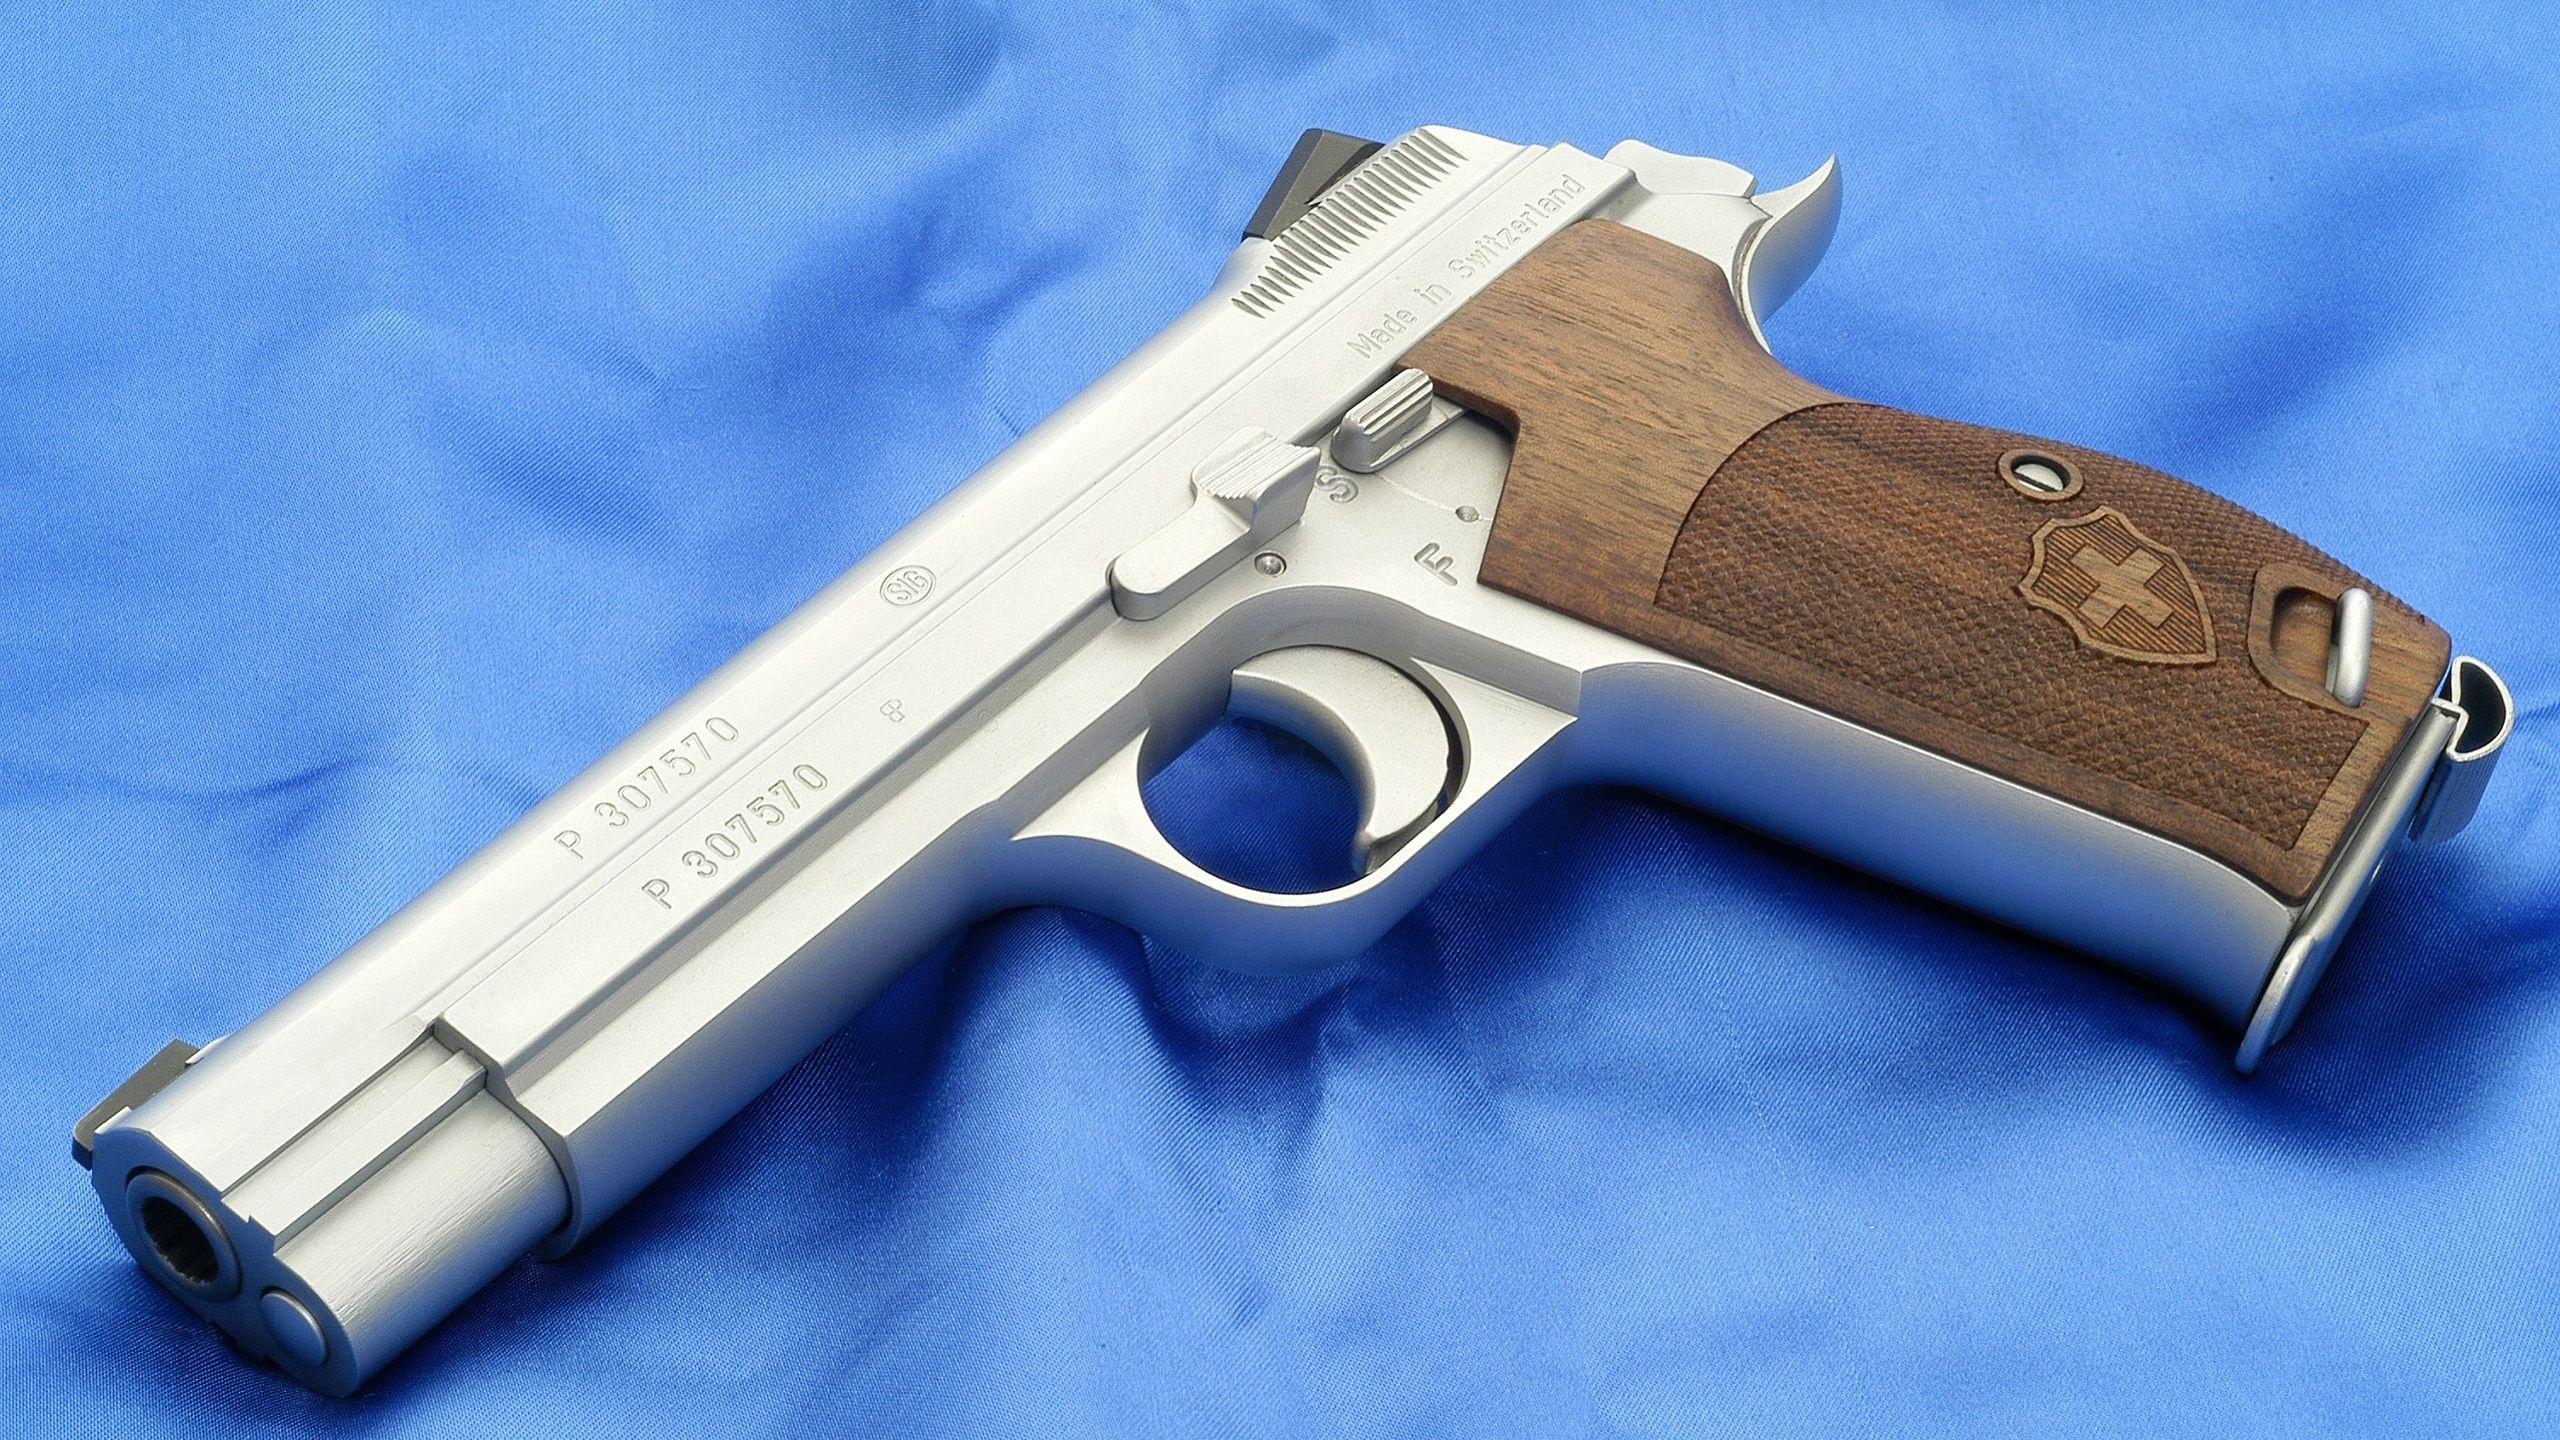 Handfeuerwaffe, Feuerwaffe, Trigger, Gun Barrel, Revolver. Wallpaper in 2560x1440 Resolution